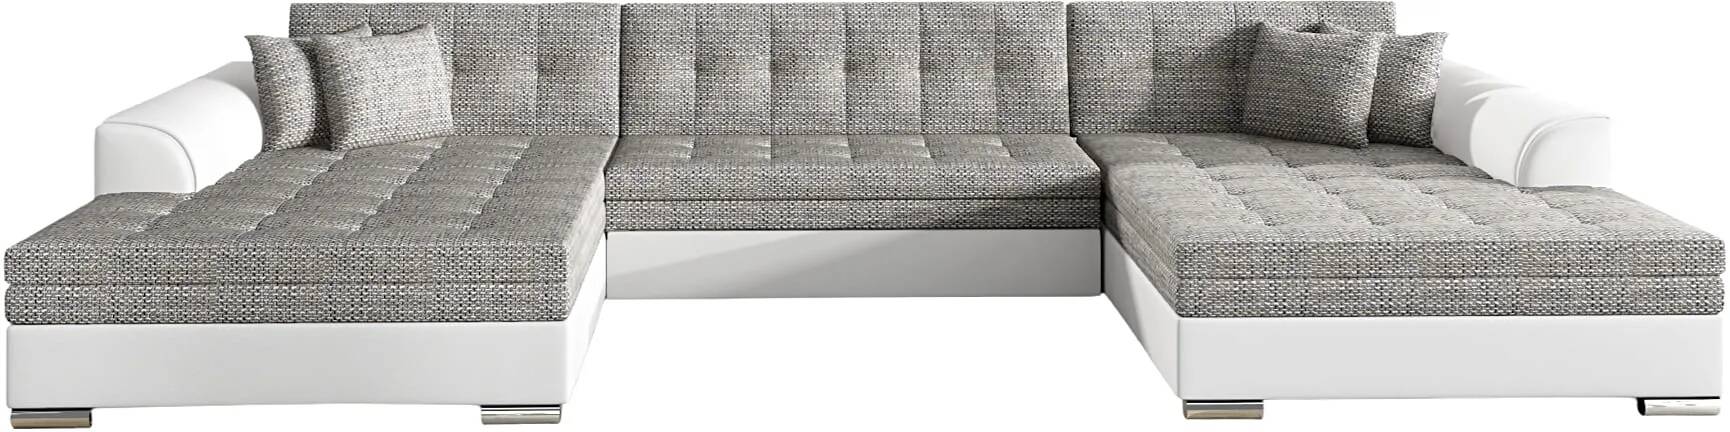 Canapé d'angle convertible en tissu chiné gris et simili cuir blanc